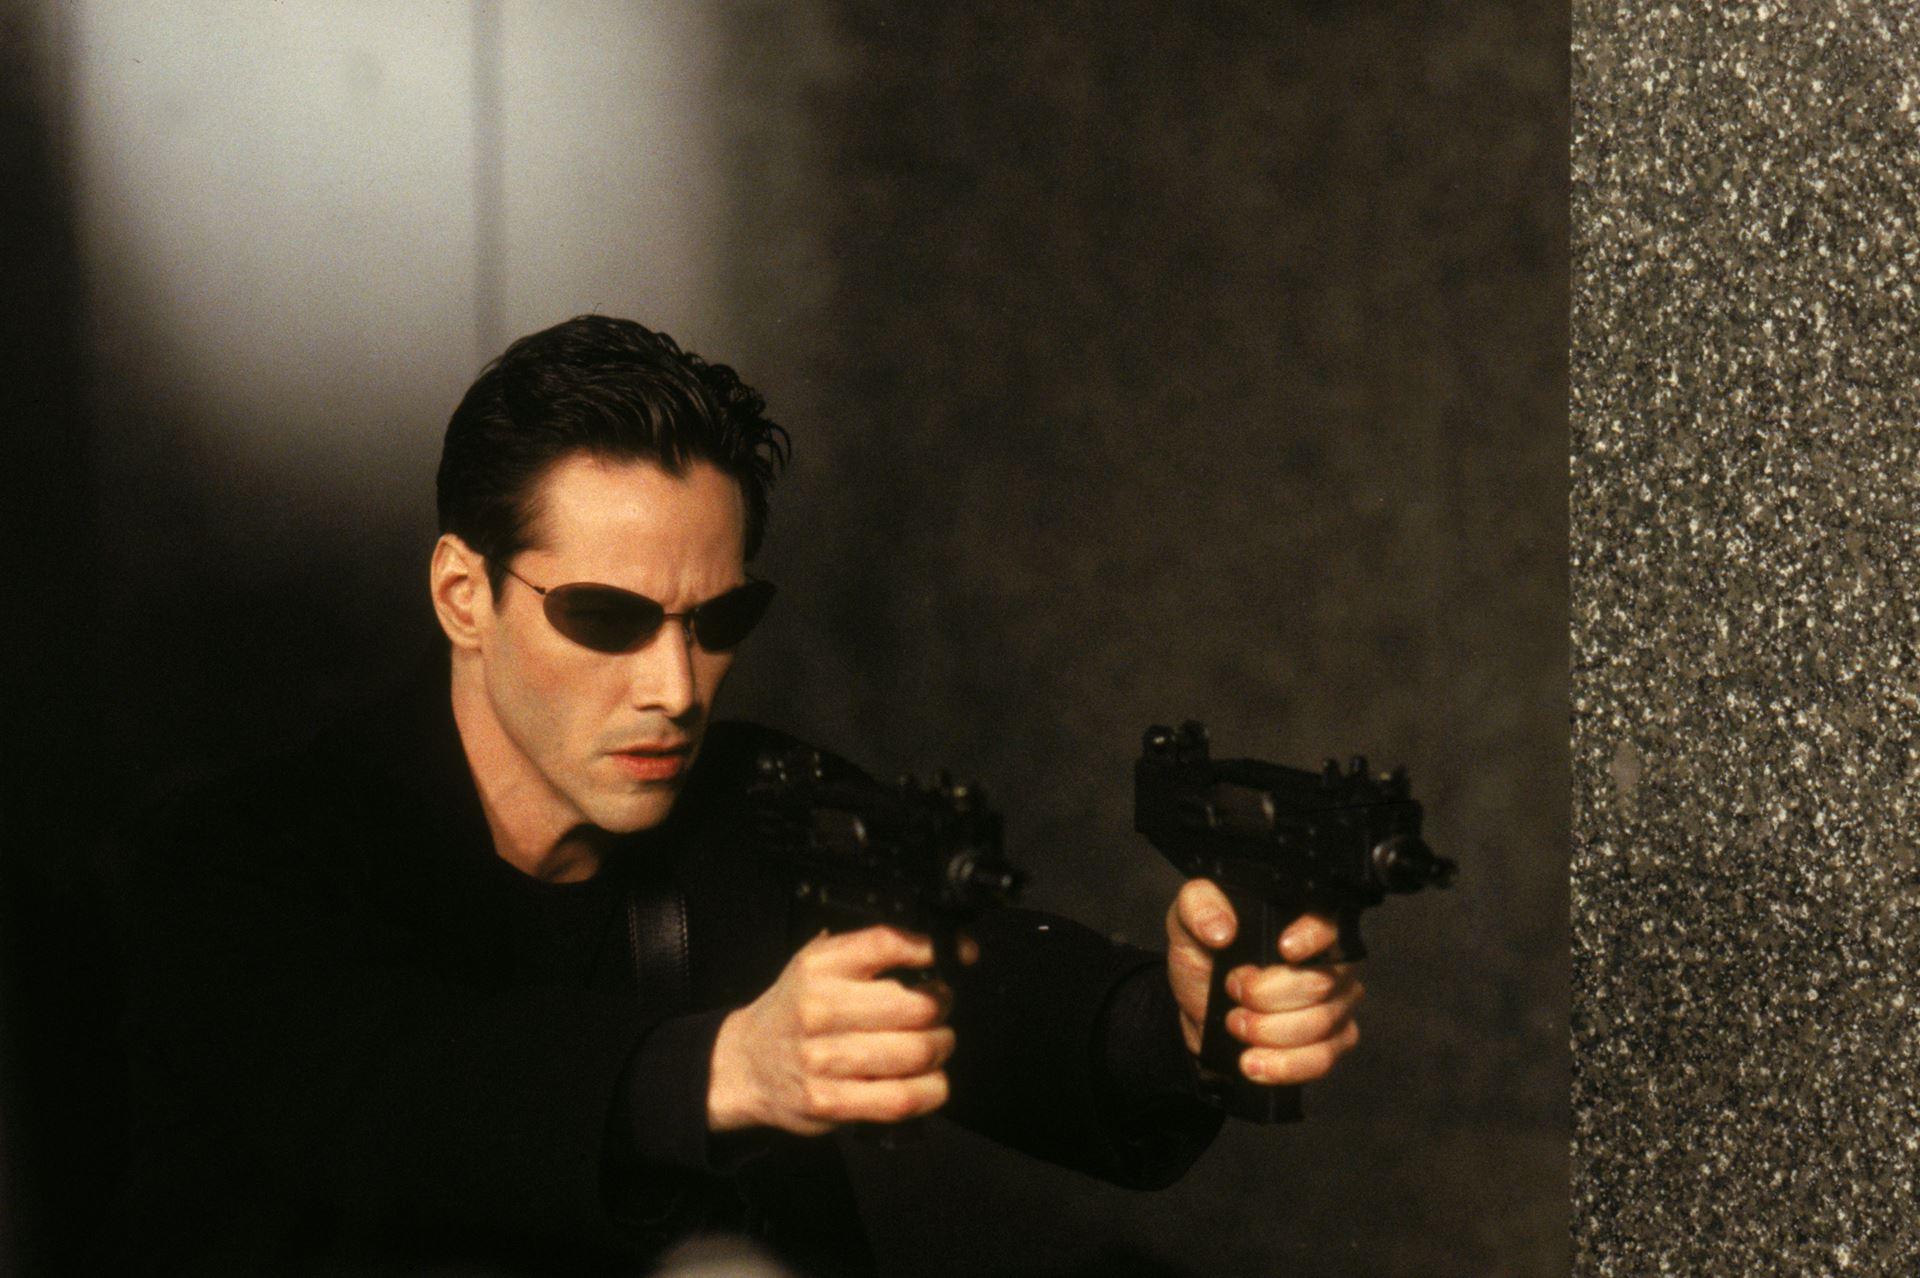 The Matrix - 25th Anniversary (1999)